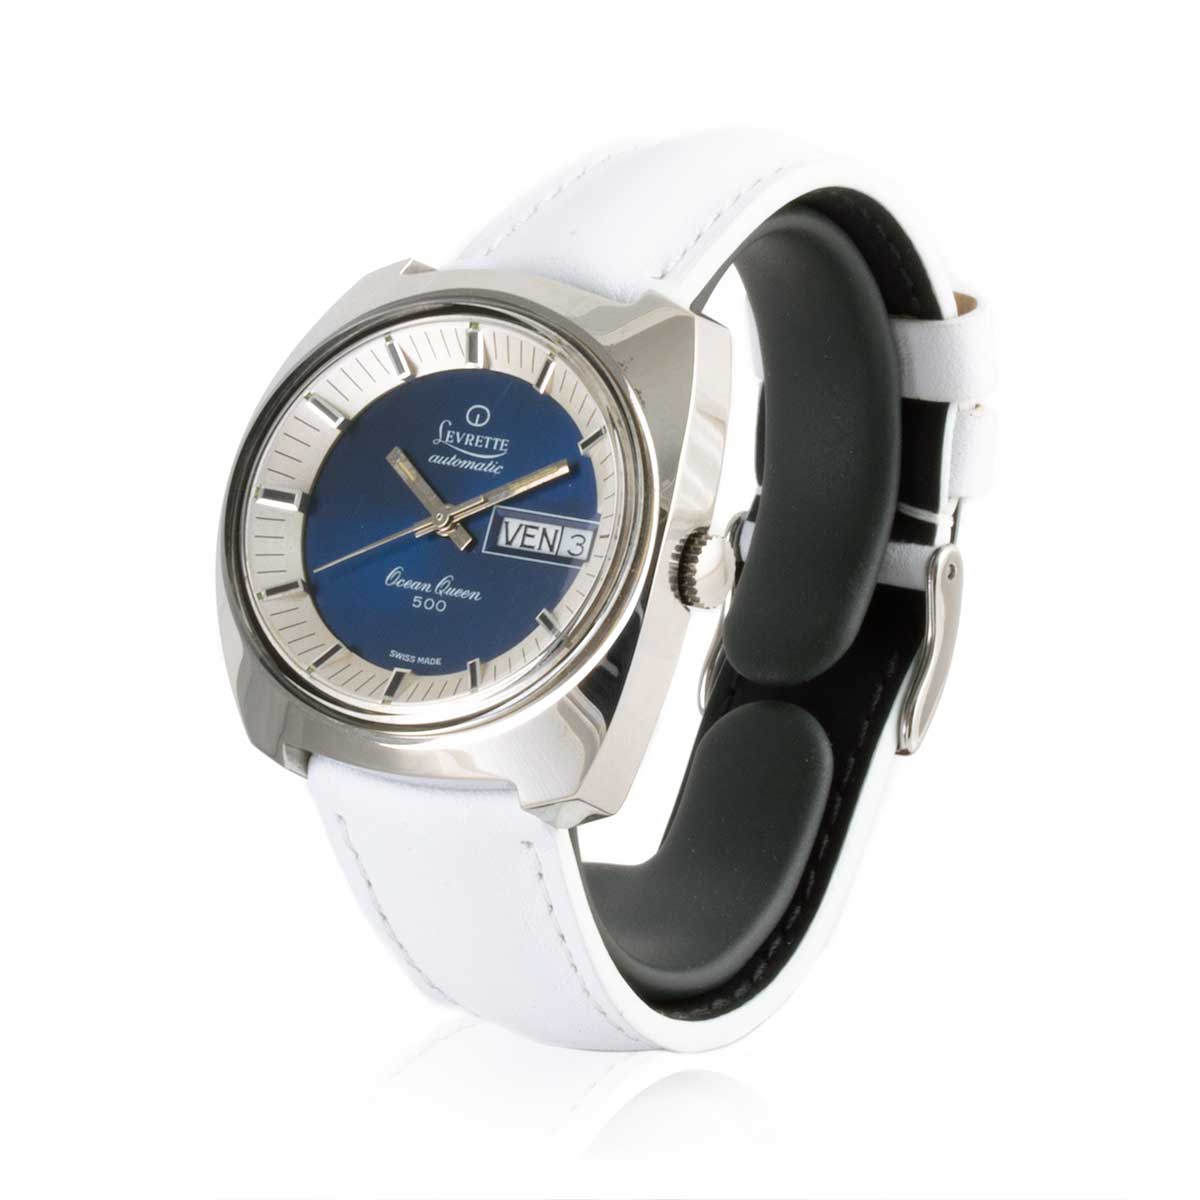  Second-hand watch - Levrette "Ocean Queen" - 900€